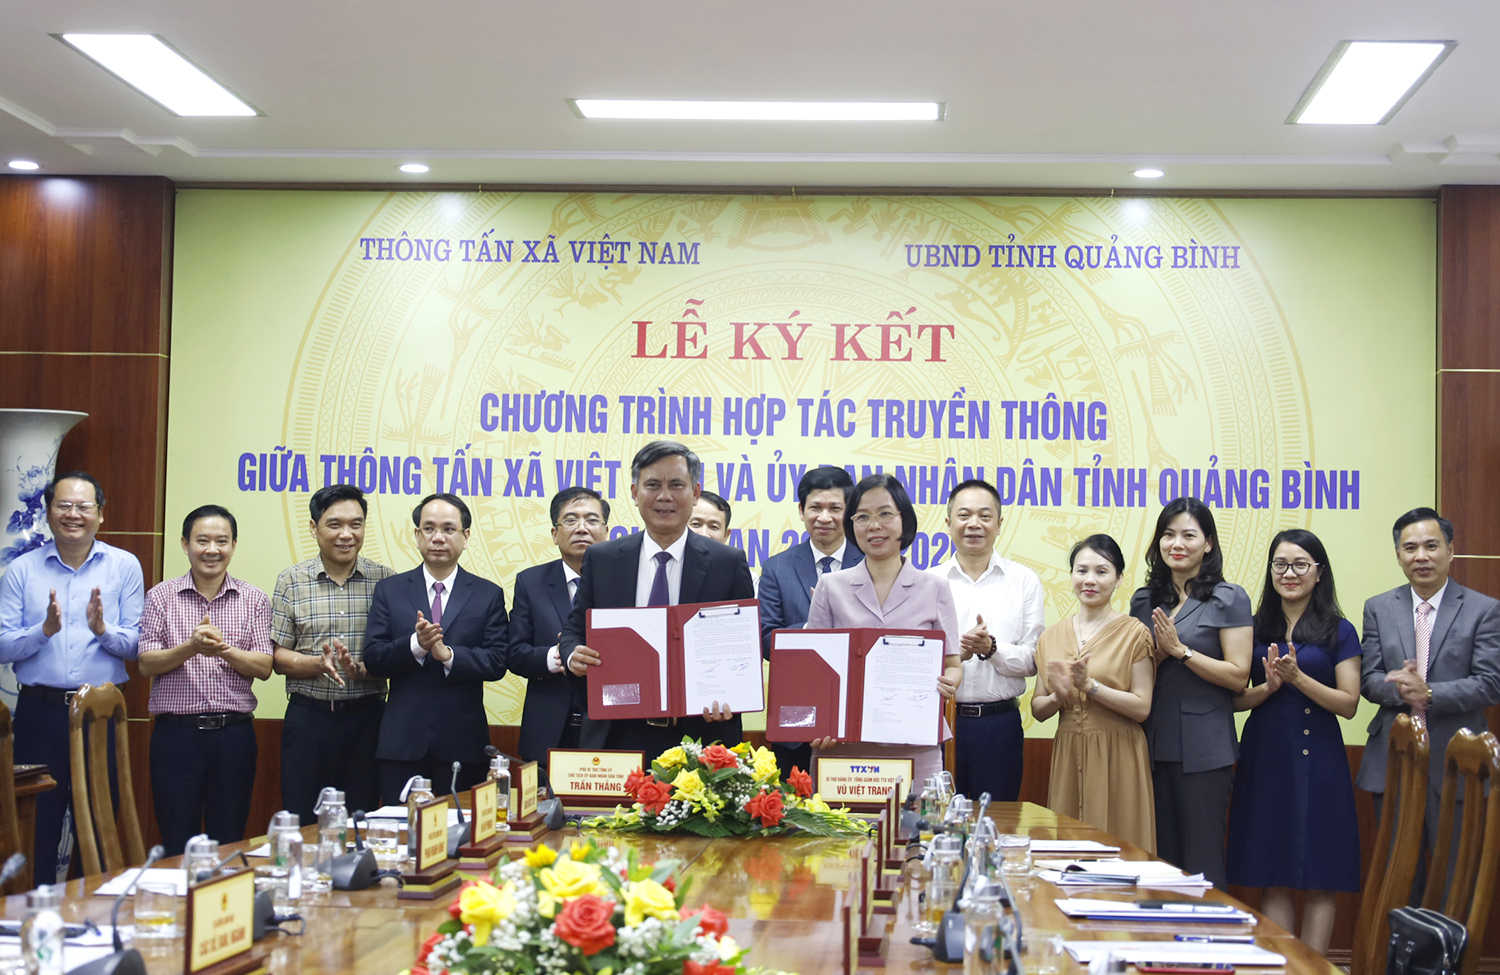 UBND tỉnh-Thông tấn xã Việt Nam: Ký kết chương trình hợp tác truyền thông giai đoạn 2023-2026